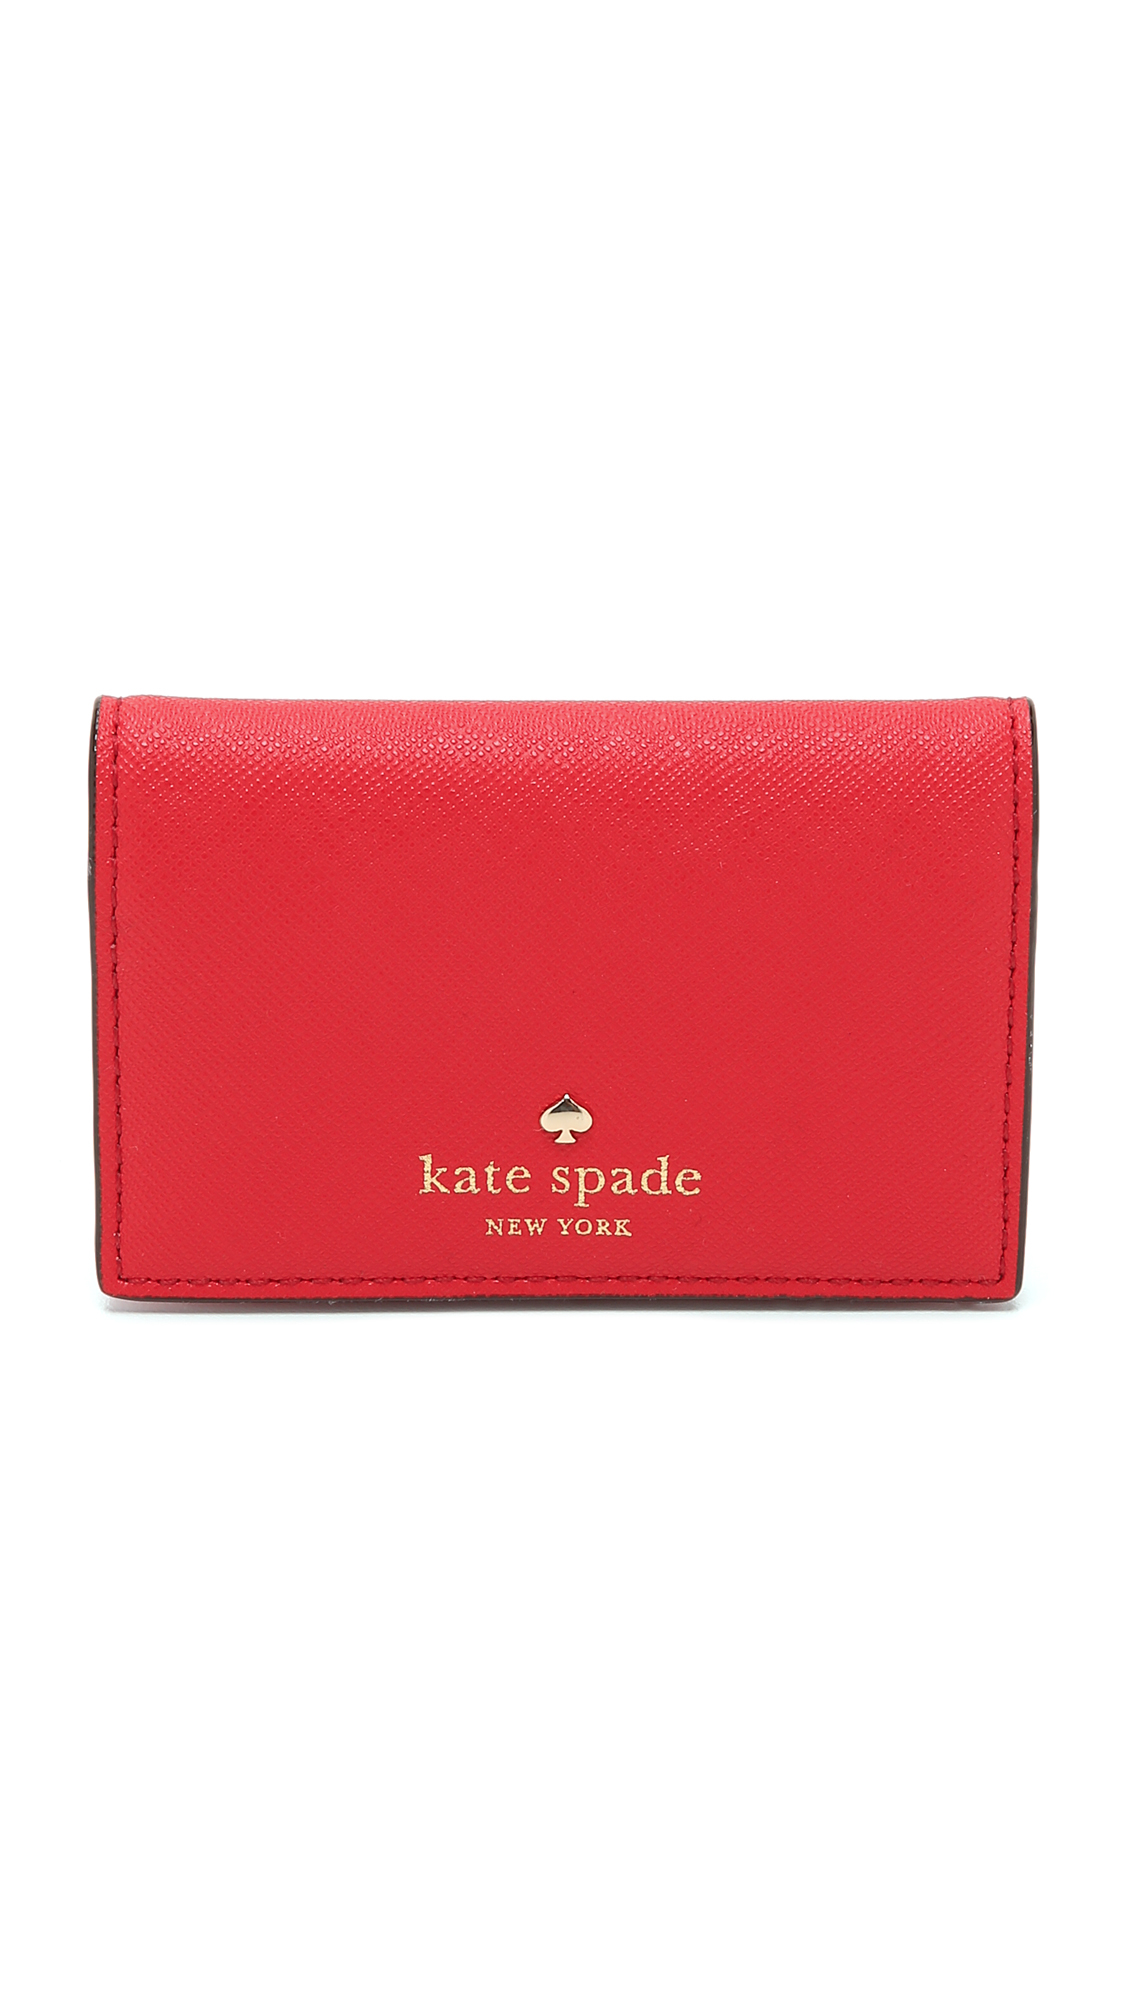 Kate spade Melanie Card Case in Red (Cherry Liqueur) | Lyst